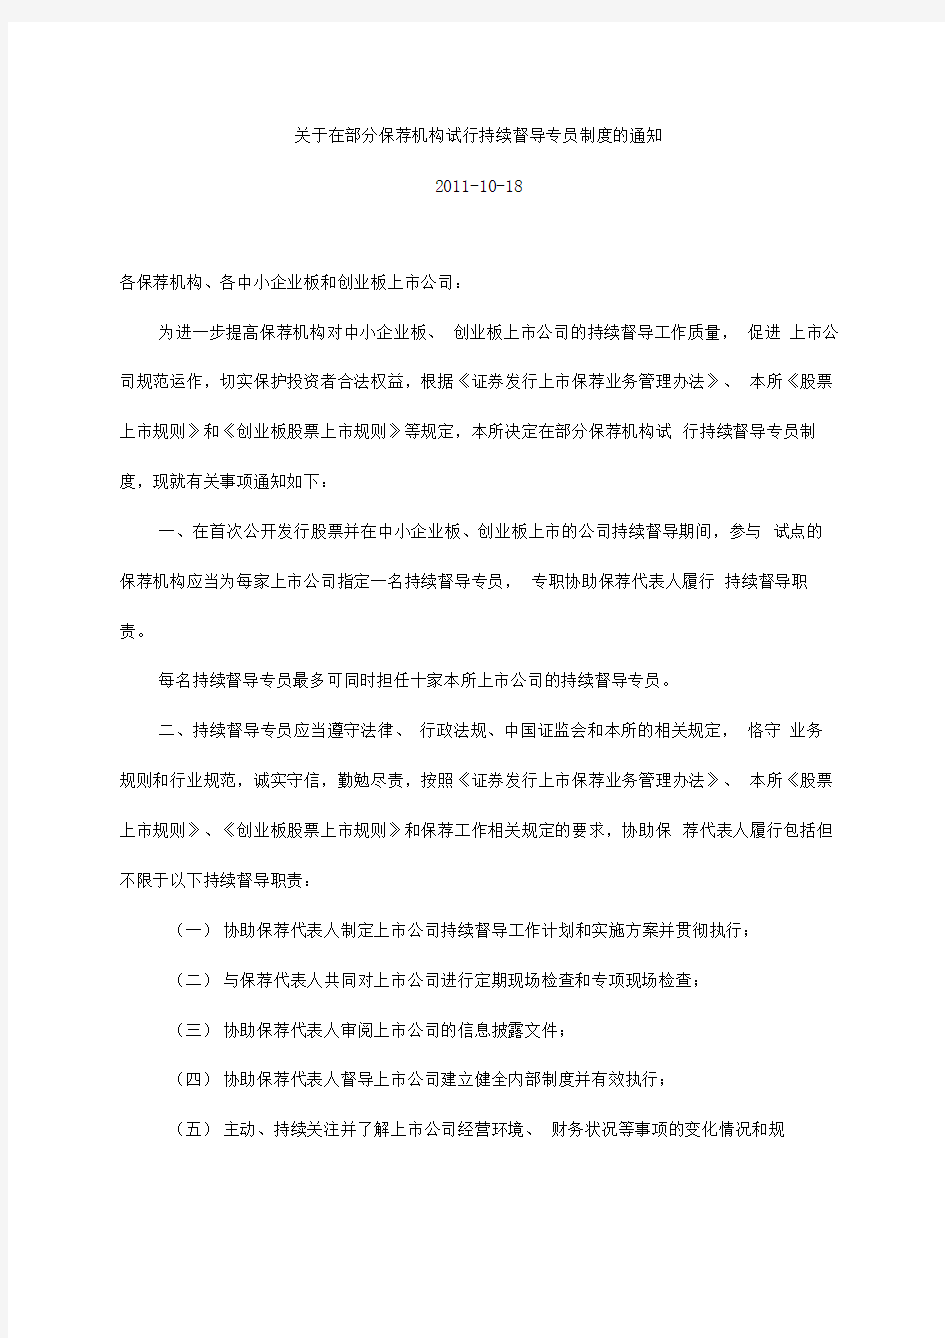 深圳证券交易所关于在部分保荐机构试行持续督导专员制度的通知